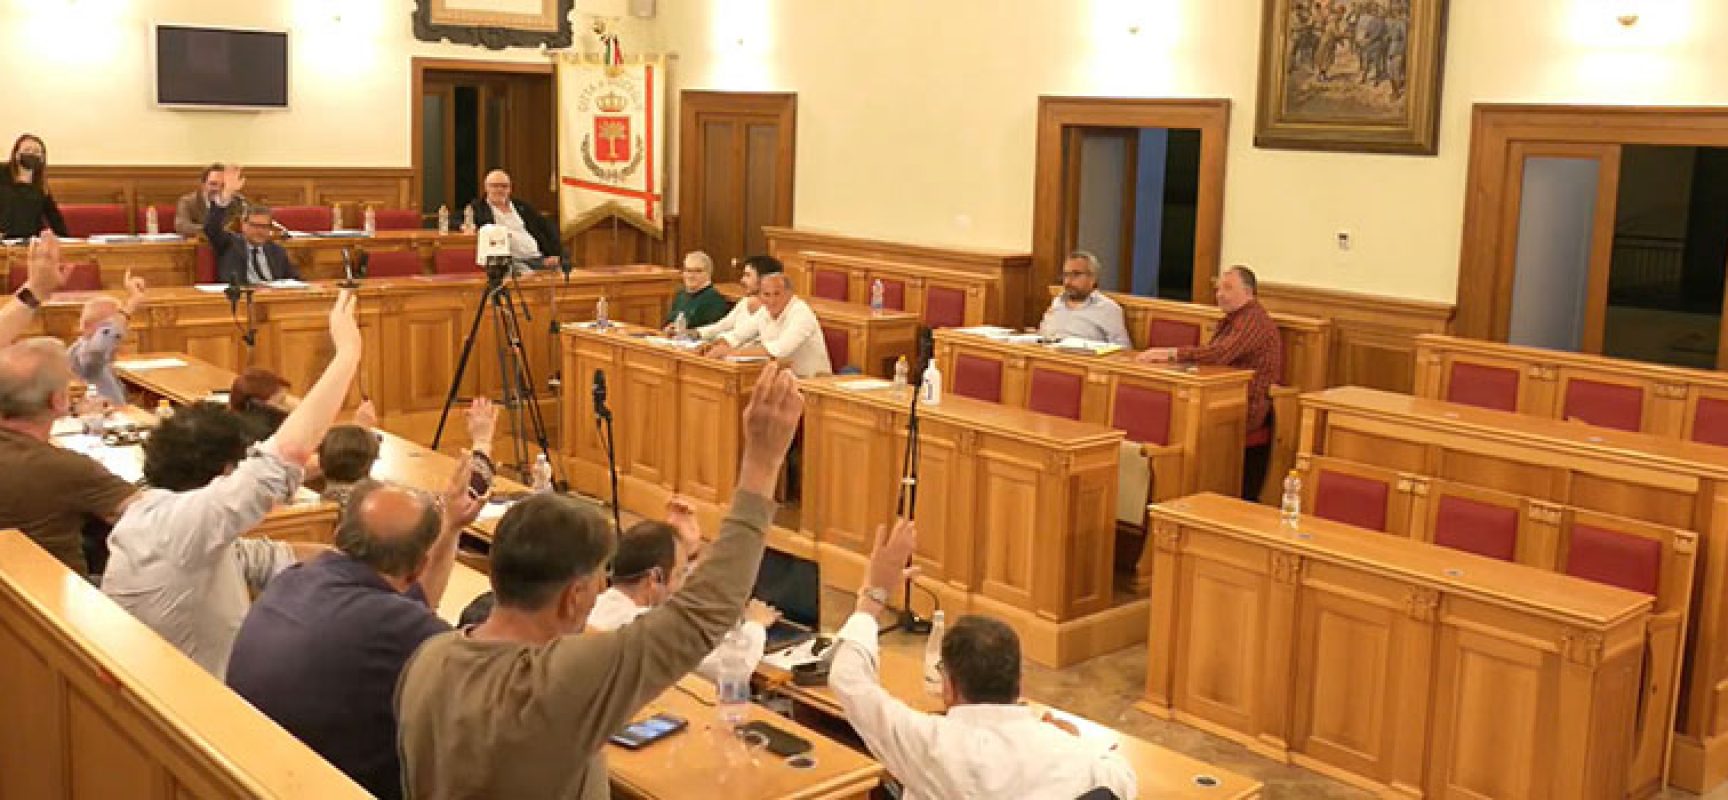 Consiglio comunale, approvato bilancio di previsione 2022-24 Angarano: “Conti in ordine”